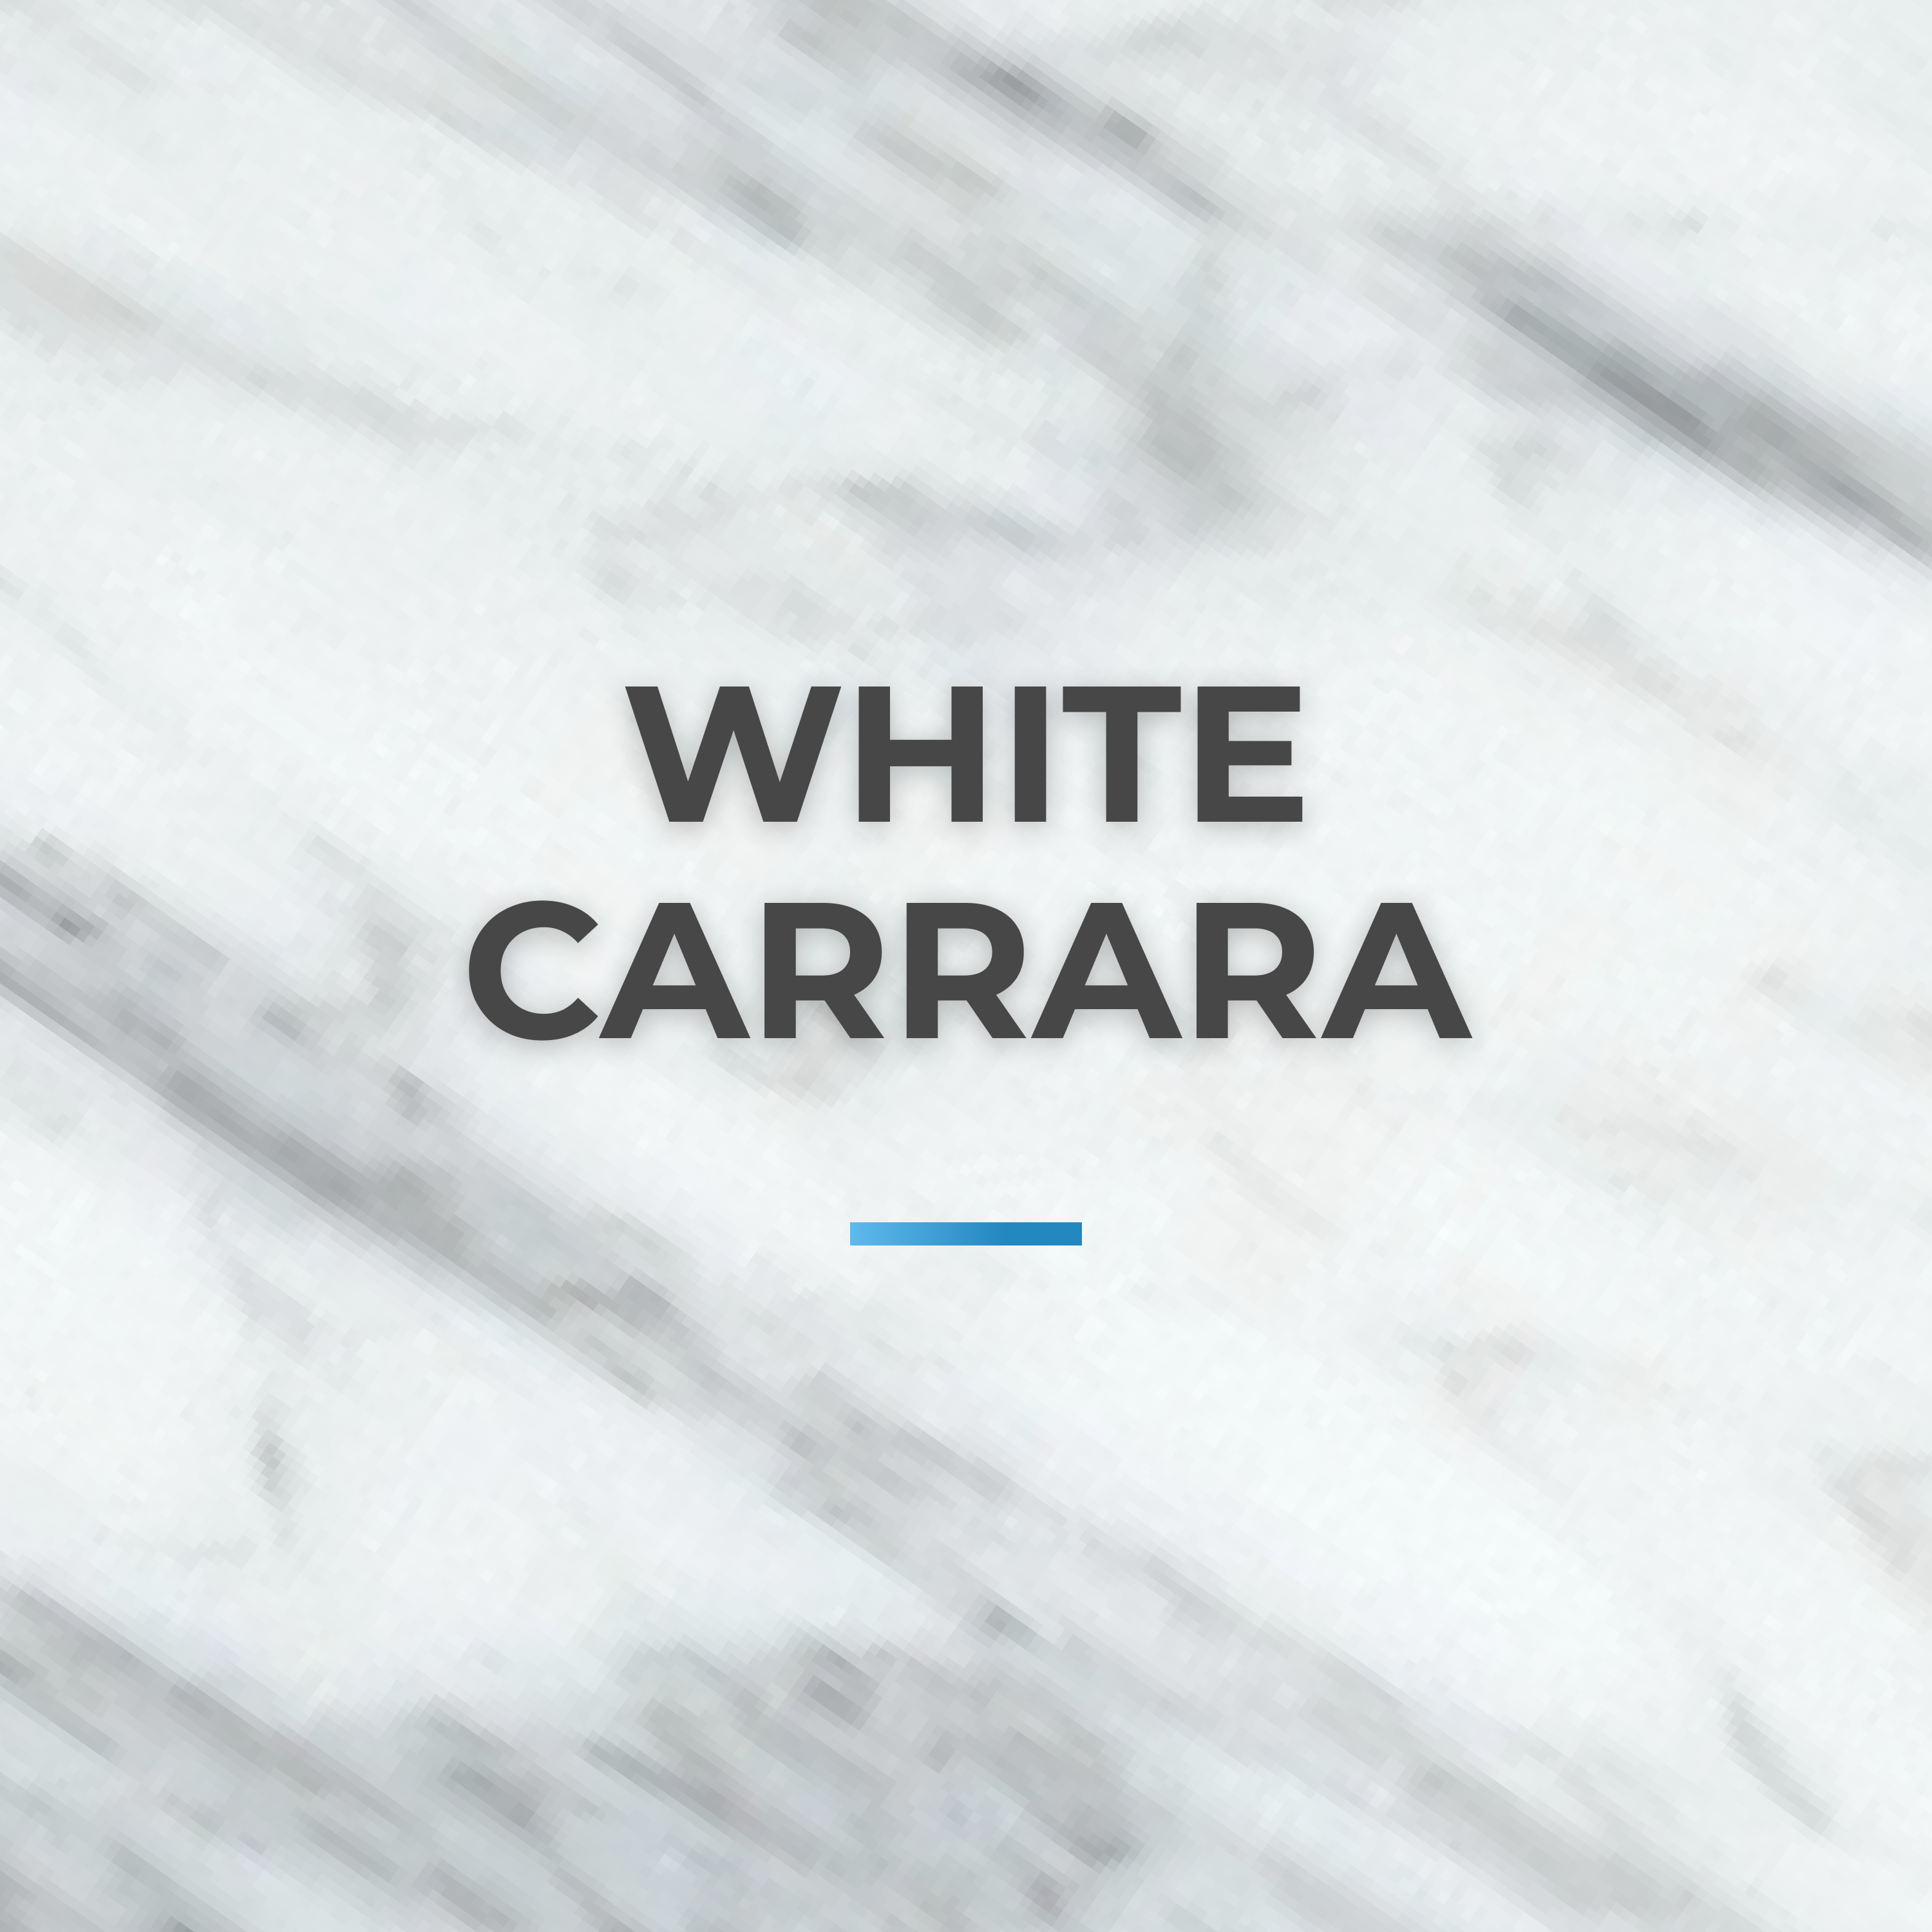 White carrara collection